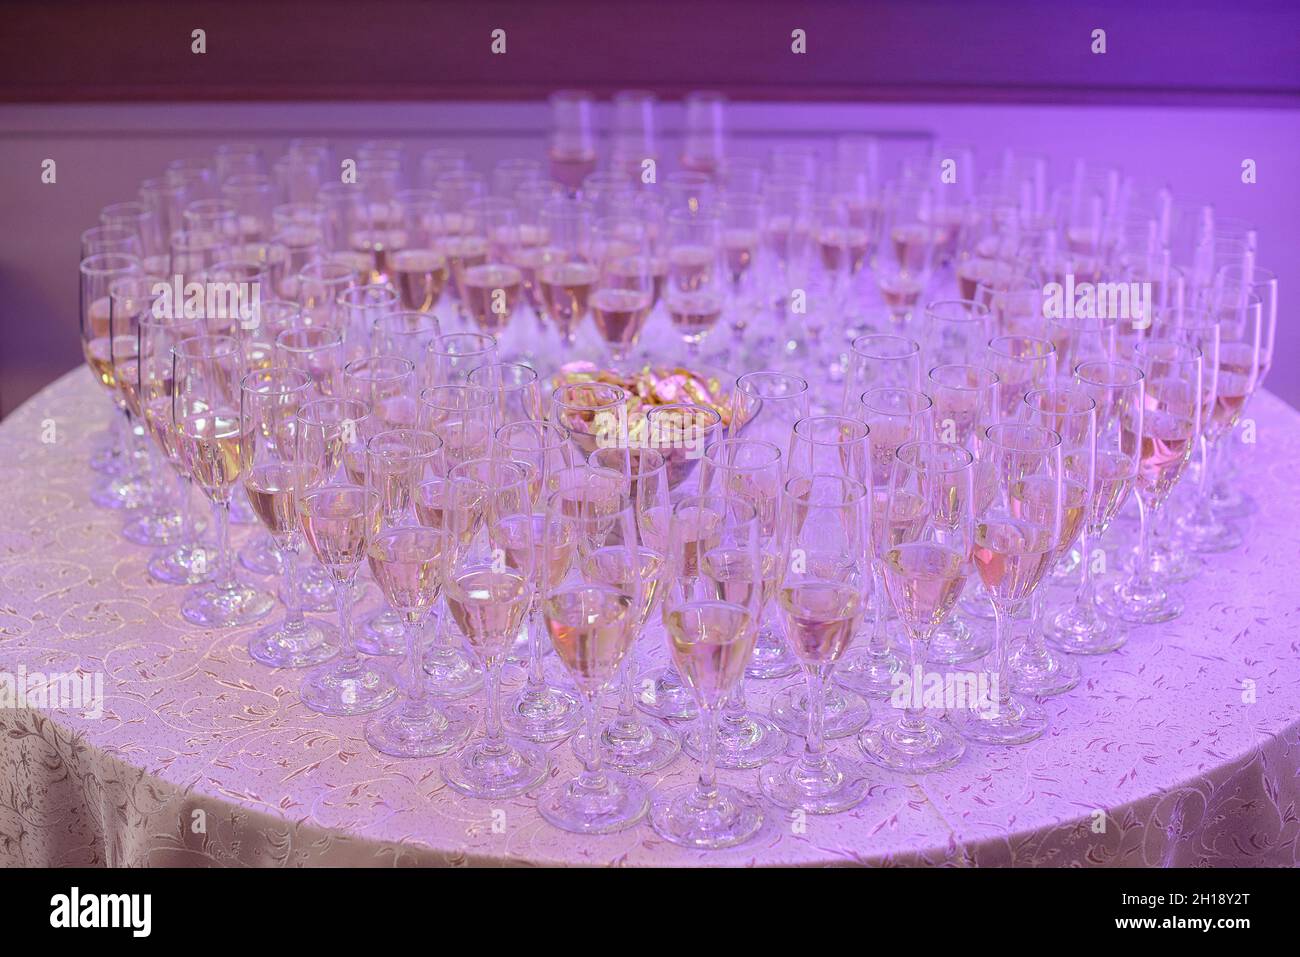 Volle Gläser Sekt oder Champagner bilden eine Herzform, positioniert auf einem runden Tisch unter einem neonvioletten Licht, eine typische Hochzeitsfeier oder Party Stockfoto